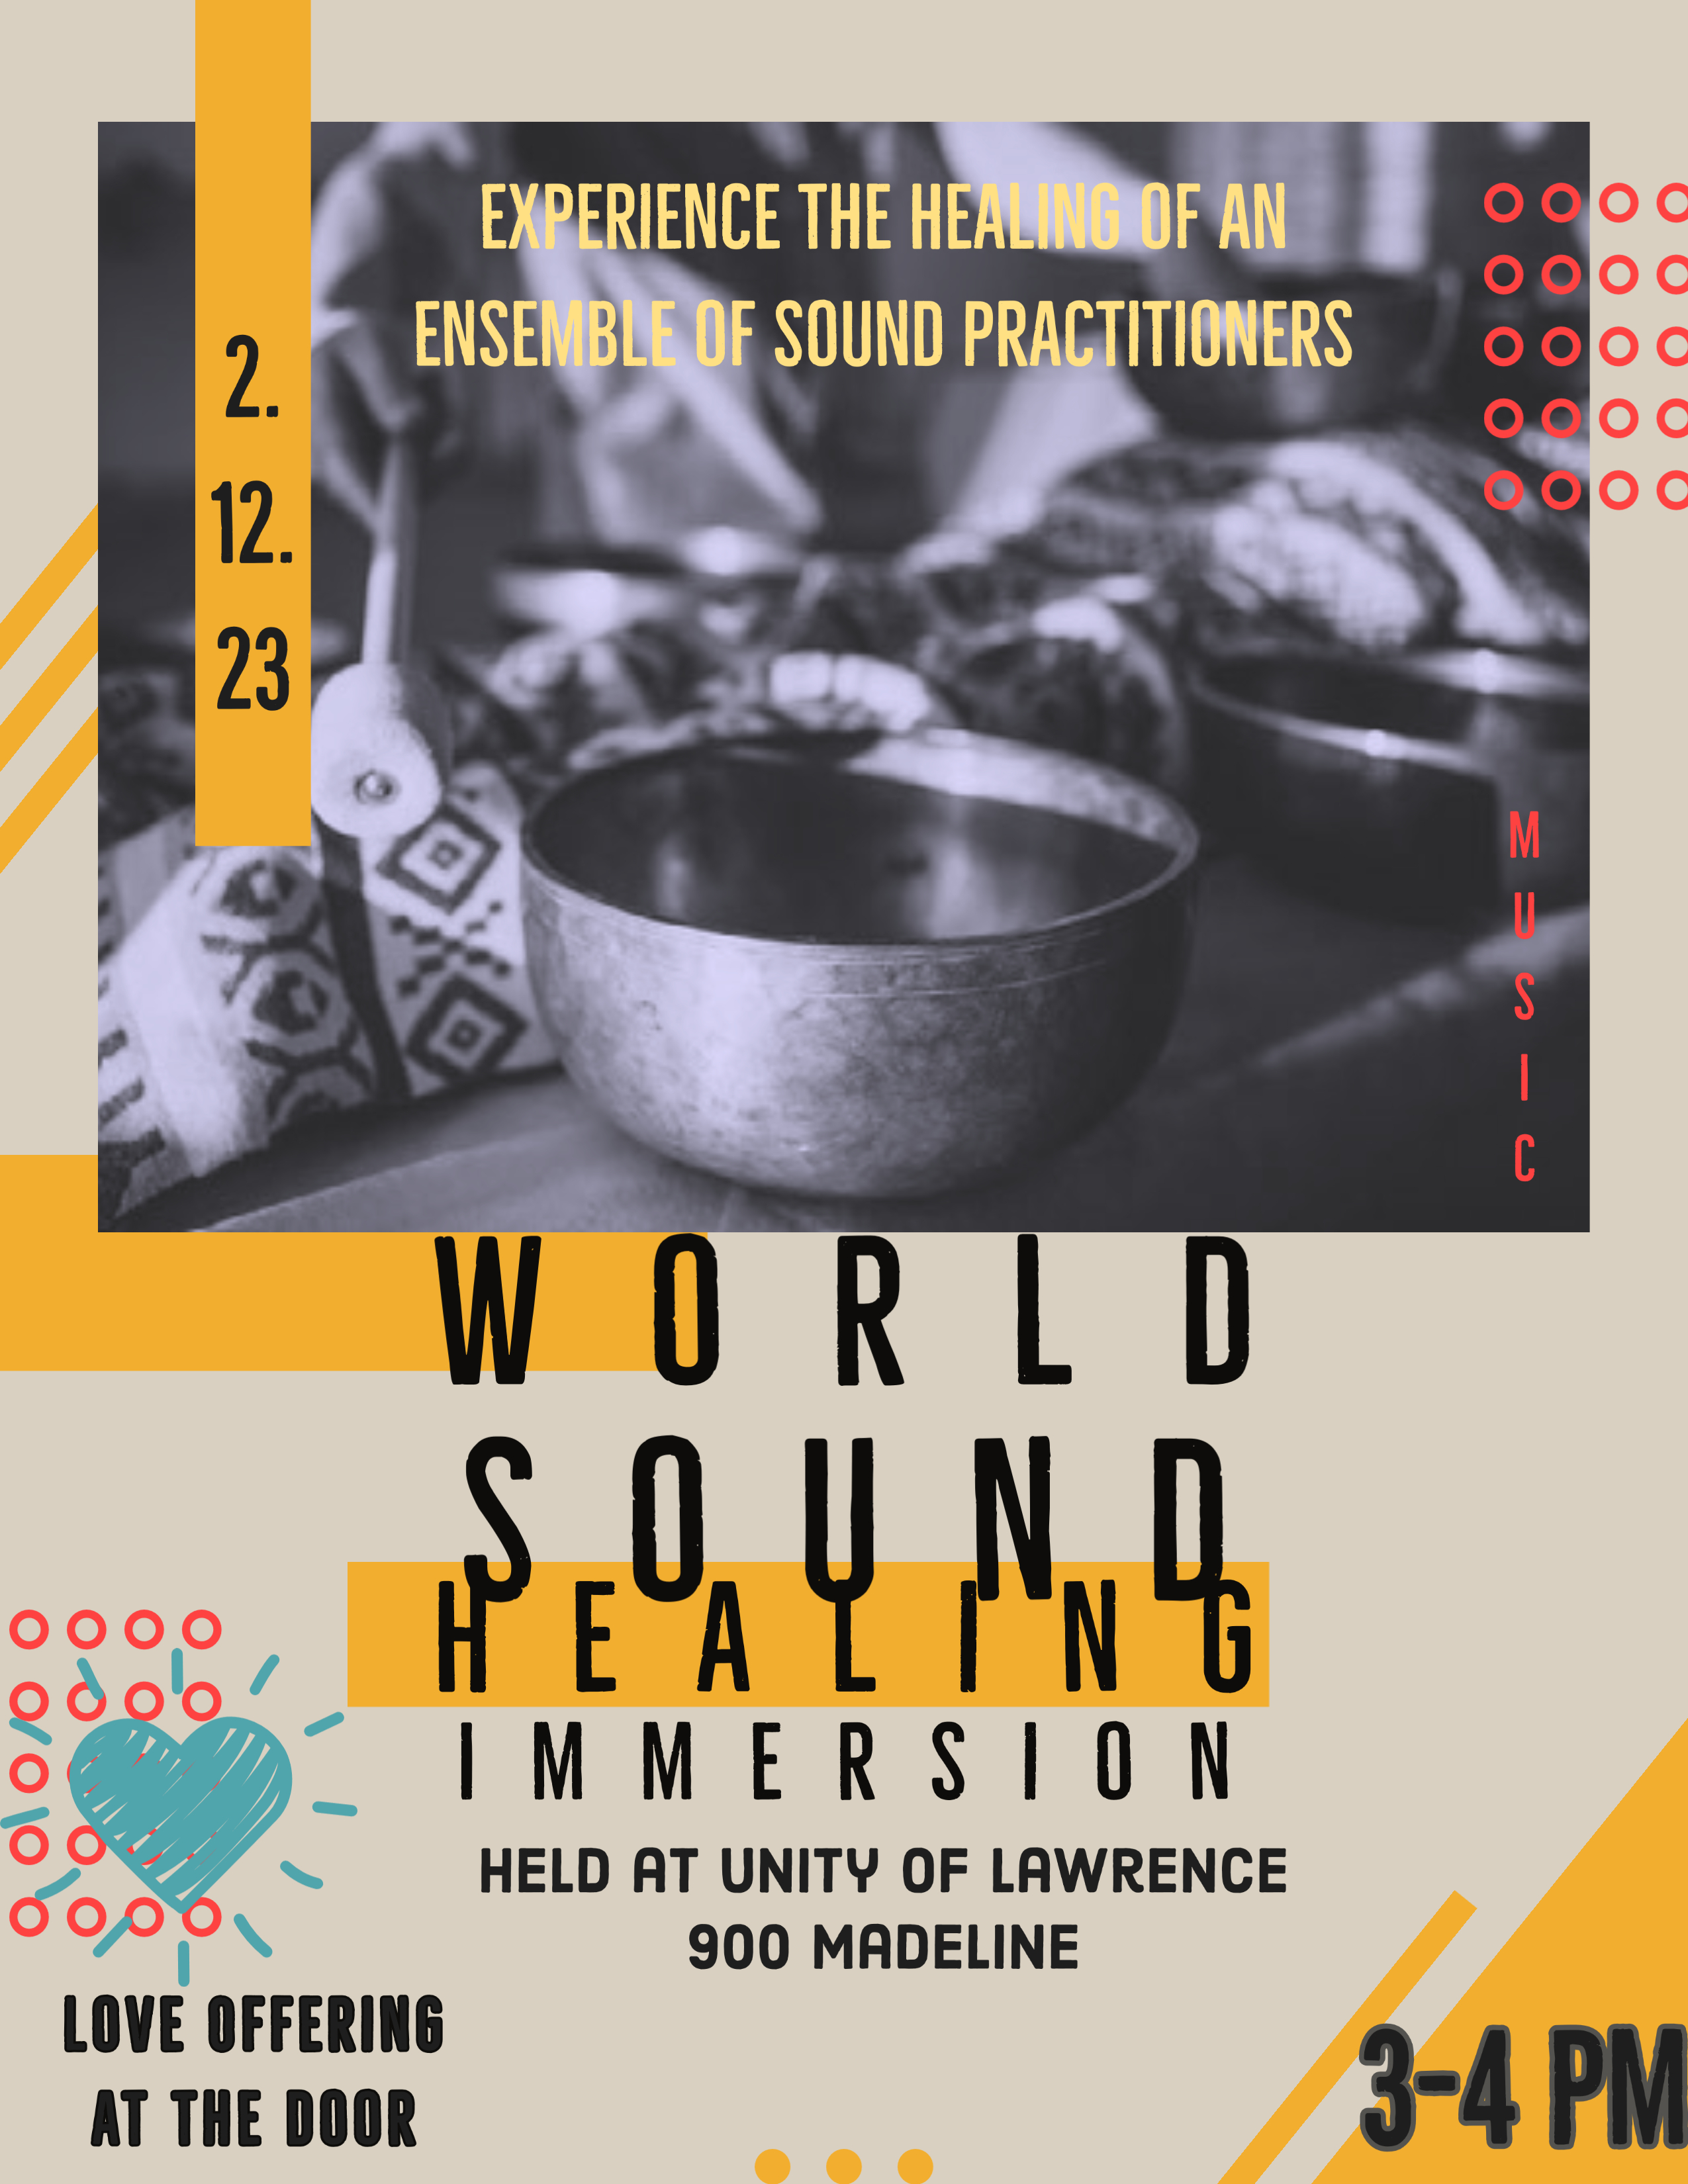 World Sound Healing Immersion